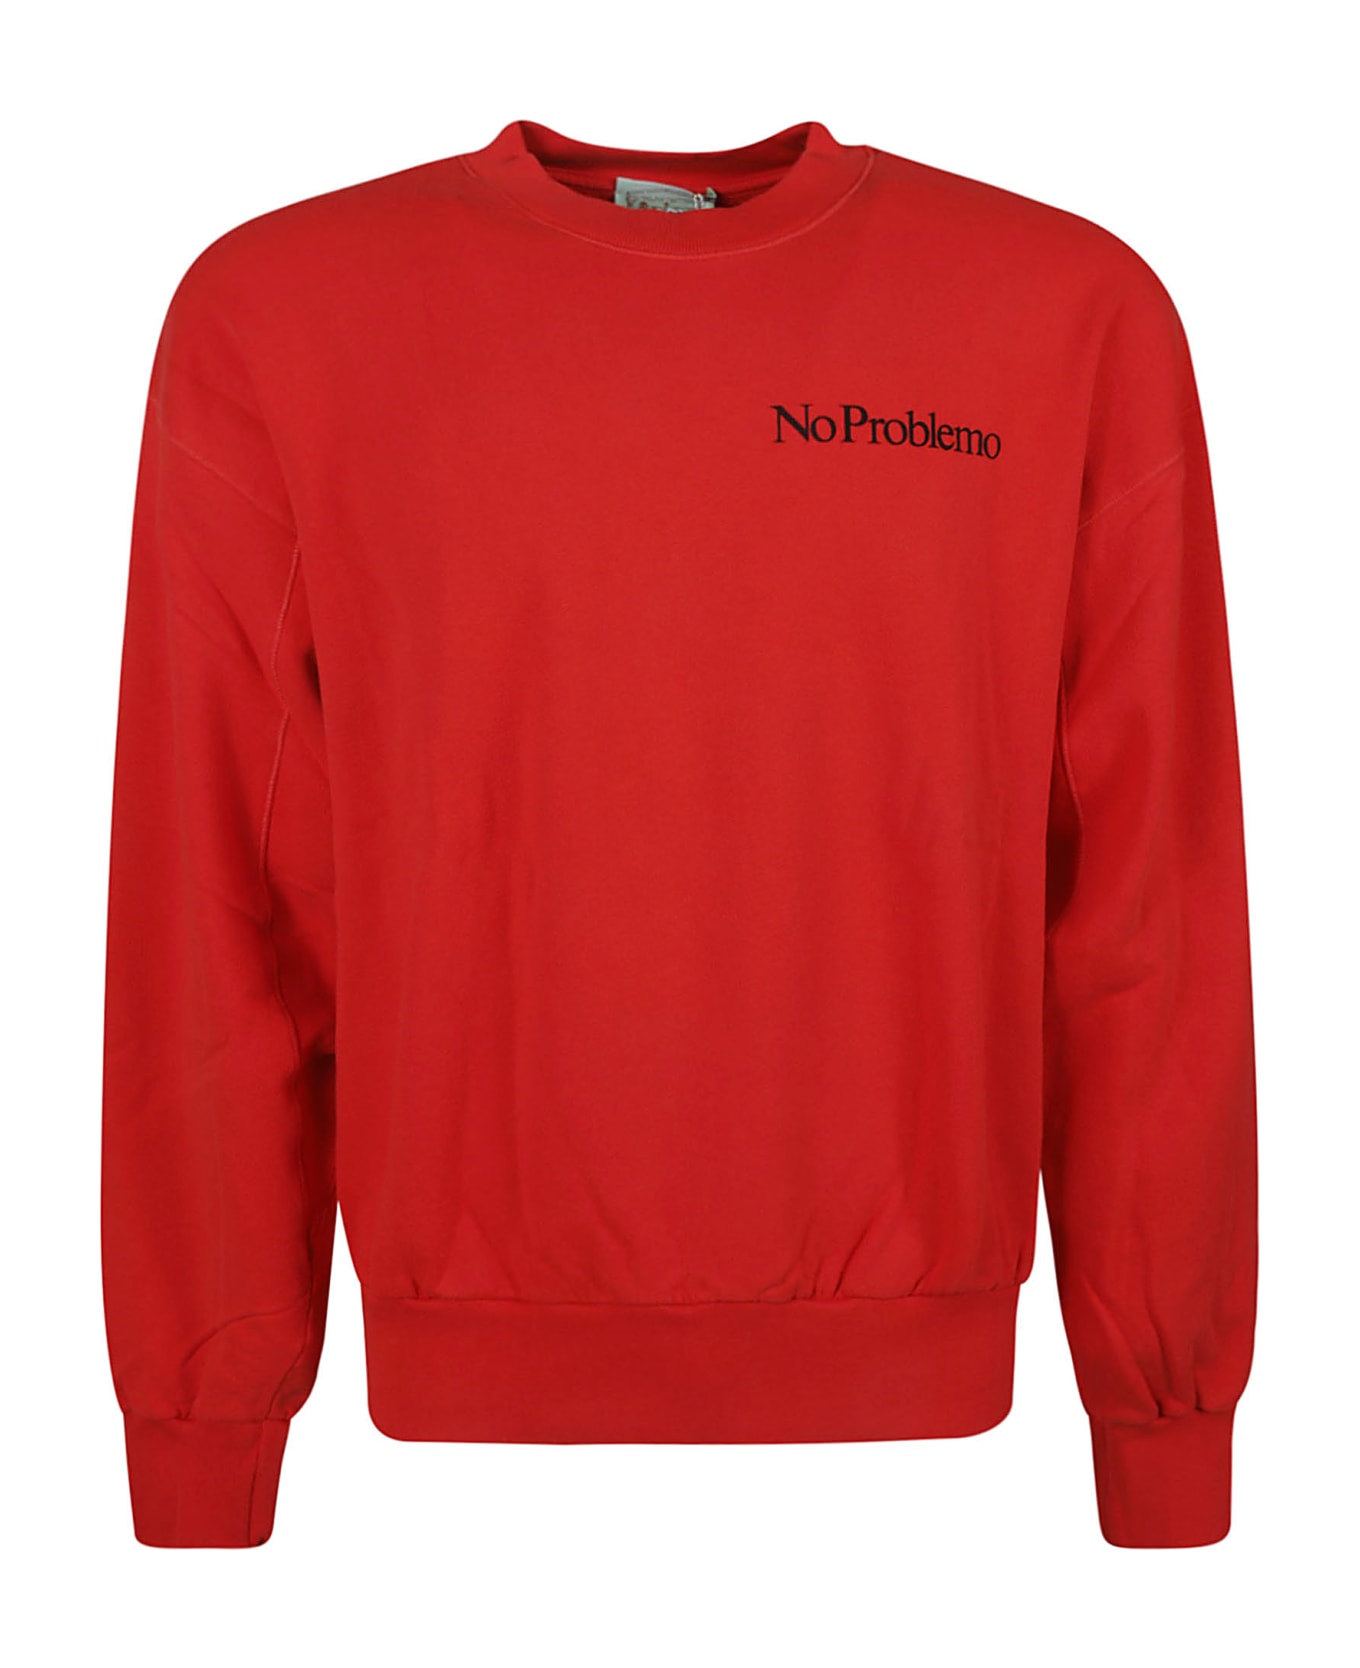 Aries Mini Portofino Sweatshirt - Red